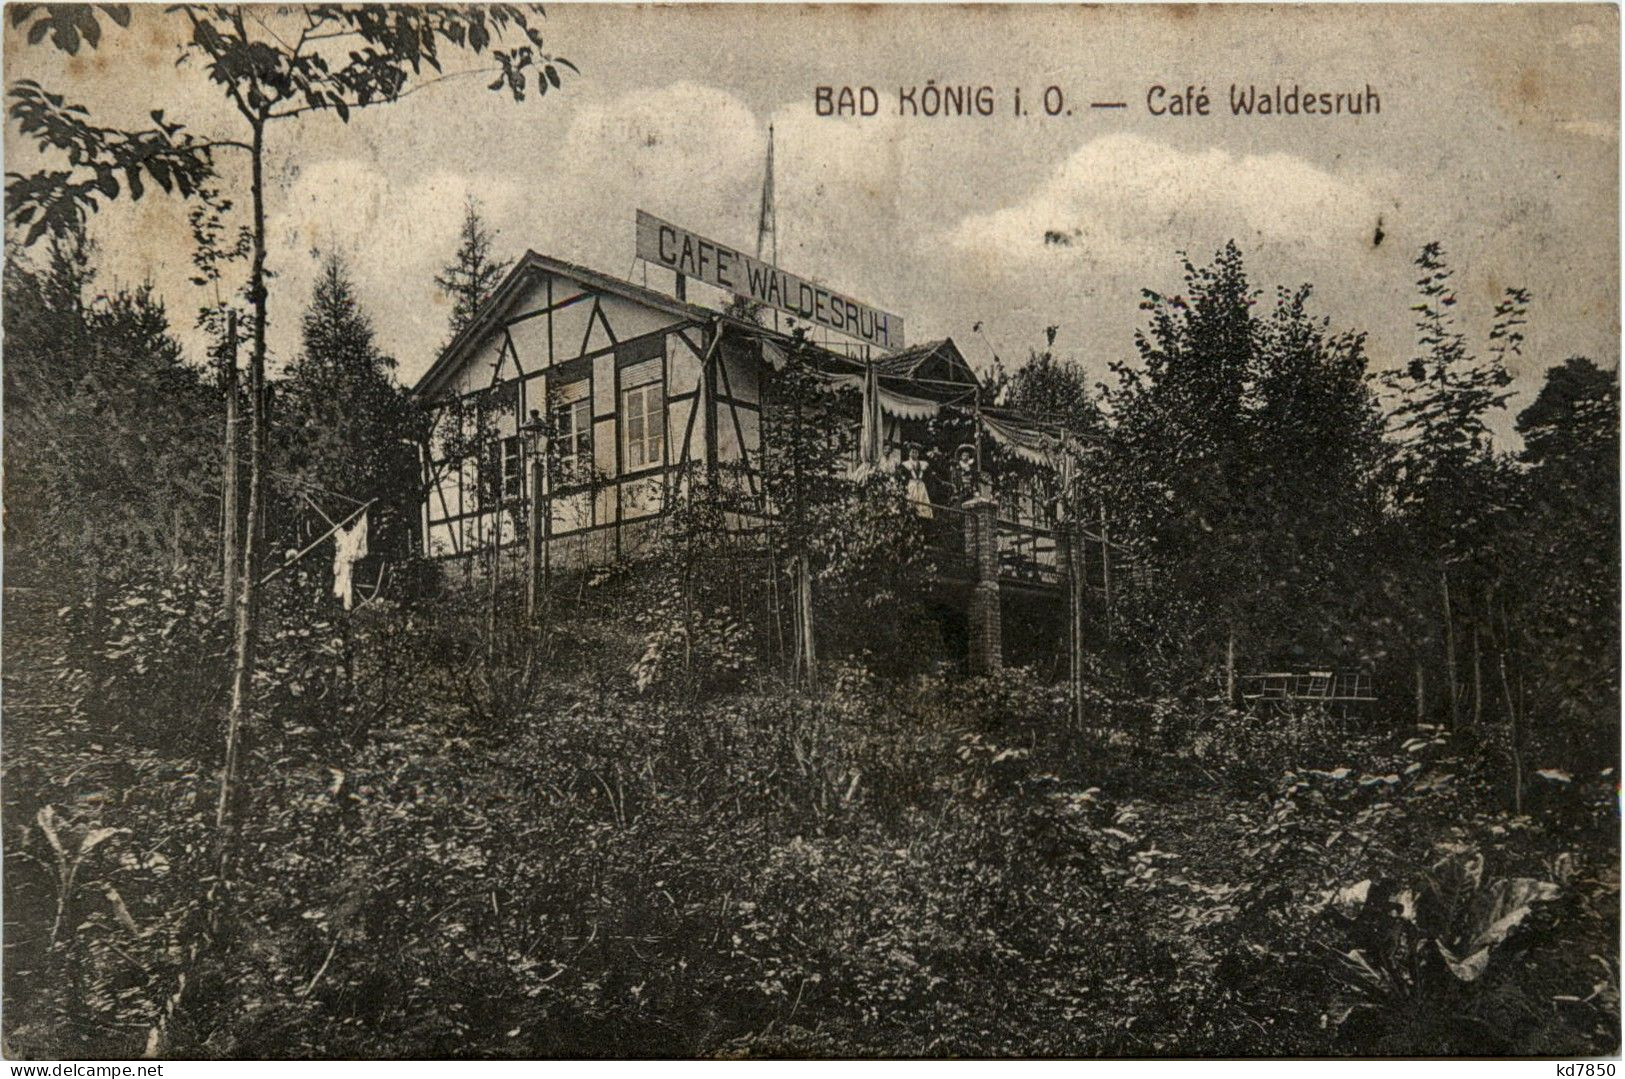 Bad König - Cafe Waldesruh - Bad Koenig